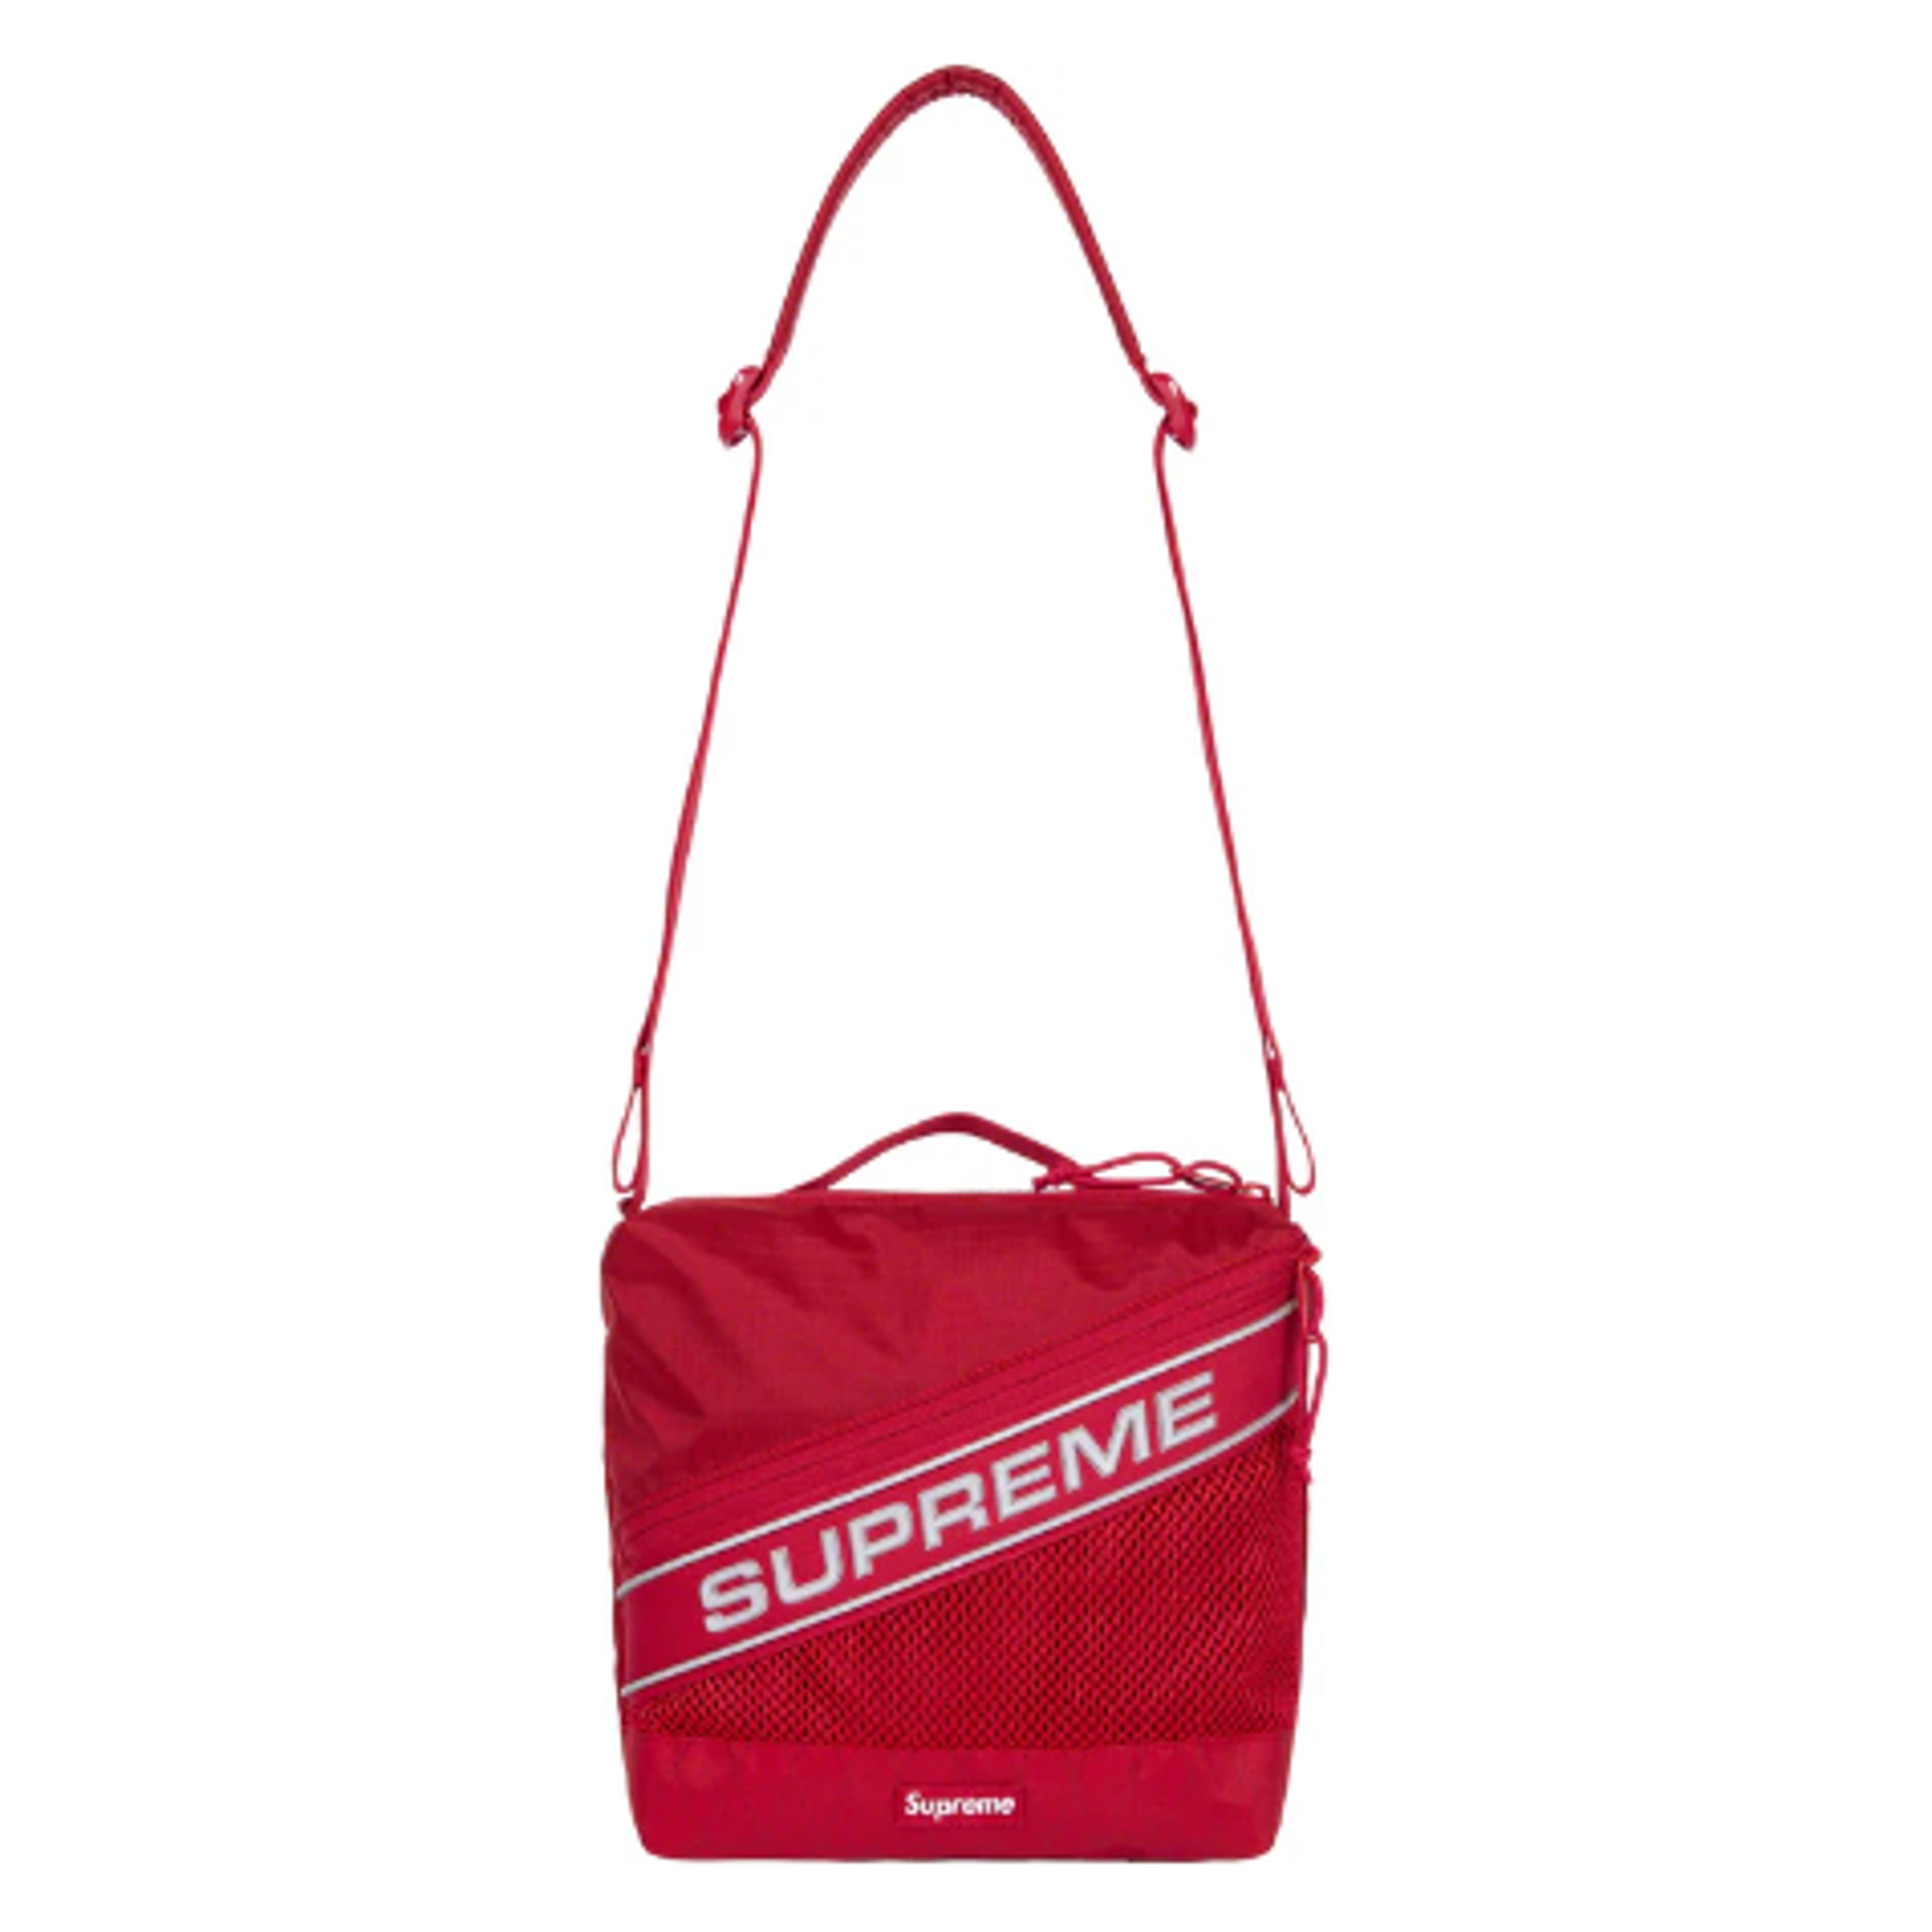 NTWRK - Supreme Shoulder Bag Red